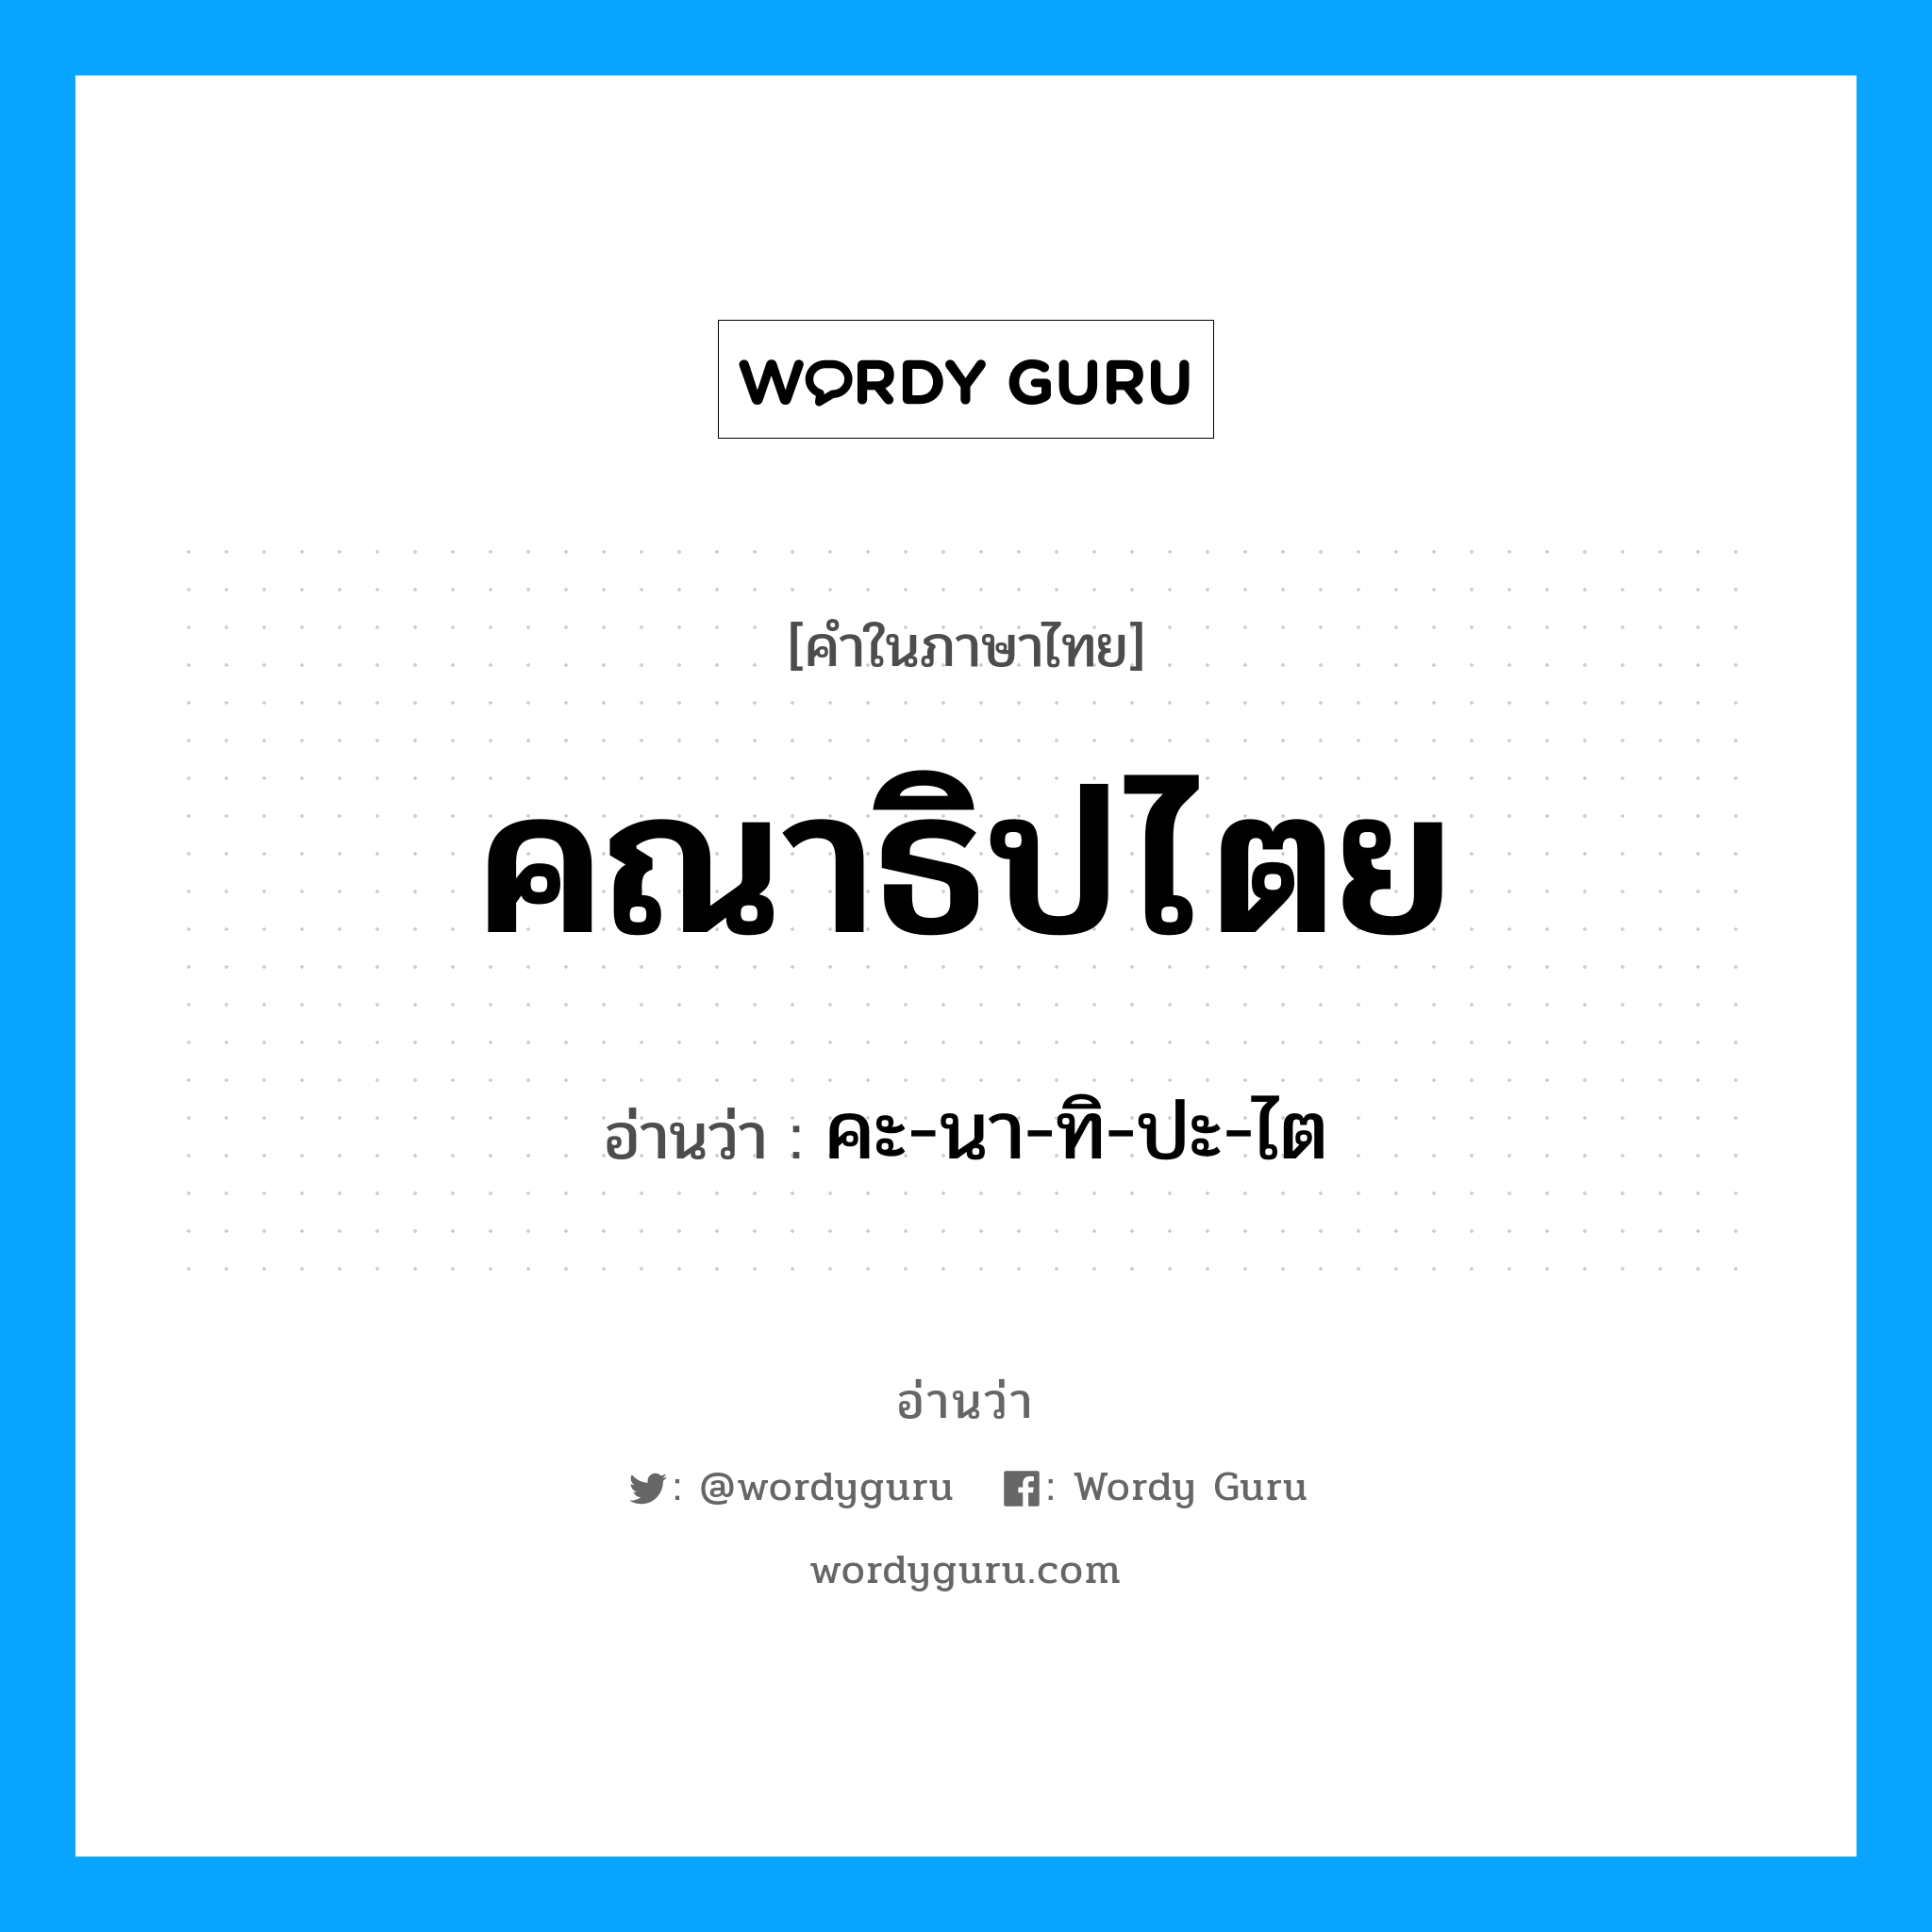 คะ-นา-ทิ-ปะ-ไต เป็นคำอ่านของคำไหน?, คำในภาษาไทย คะ-นา-ทิ-ปะ-ไต อ่านว่า คณาธิปไตย